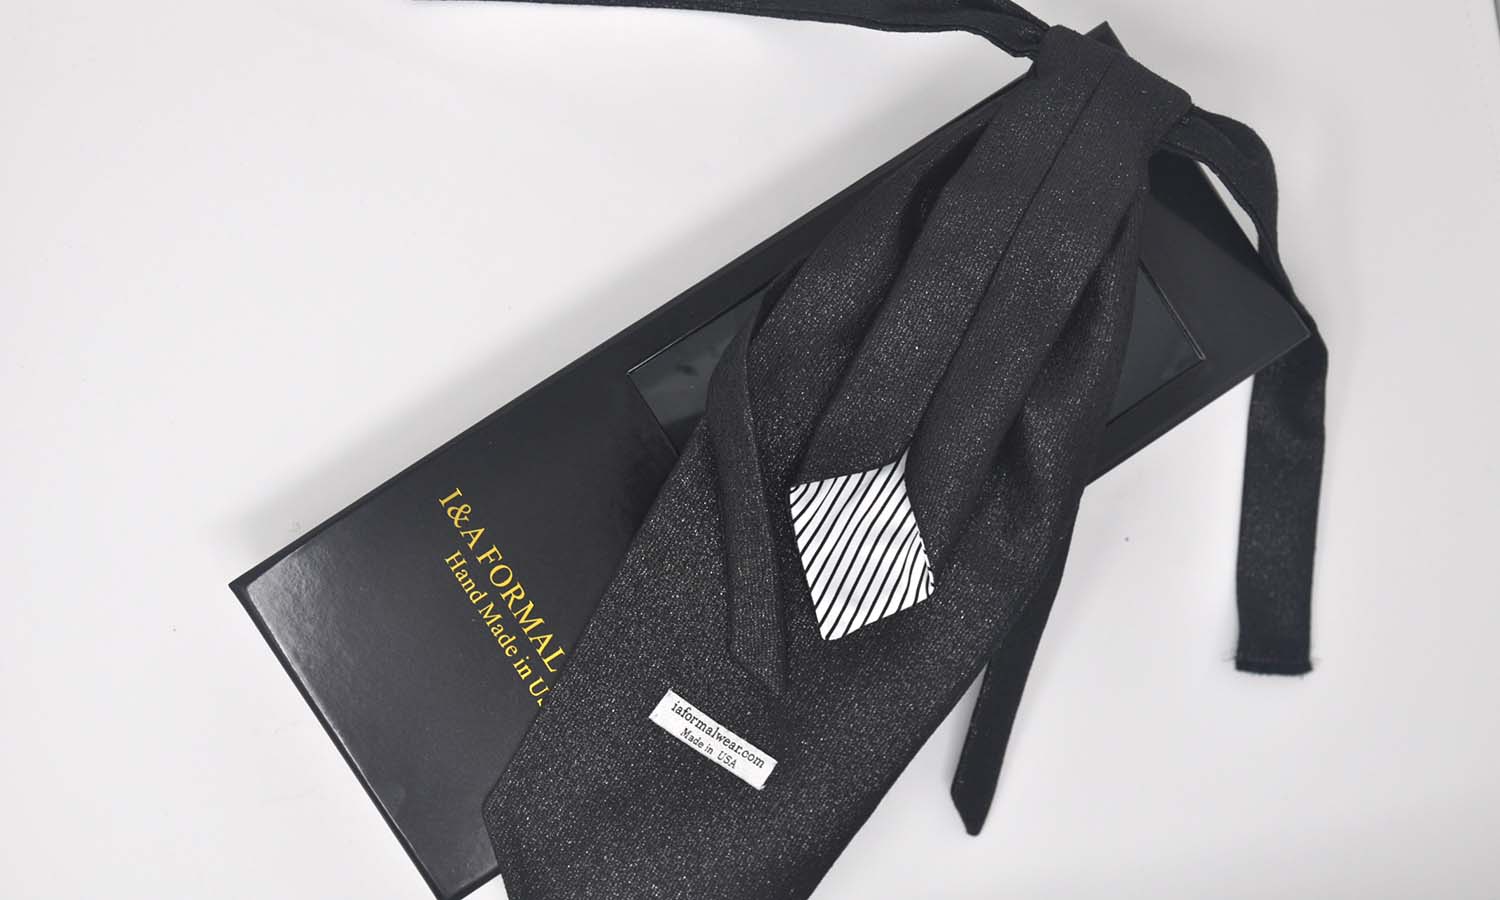 Tie Ascot lavallière / Suit Clutch / Cufflinks Plain Emerald